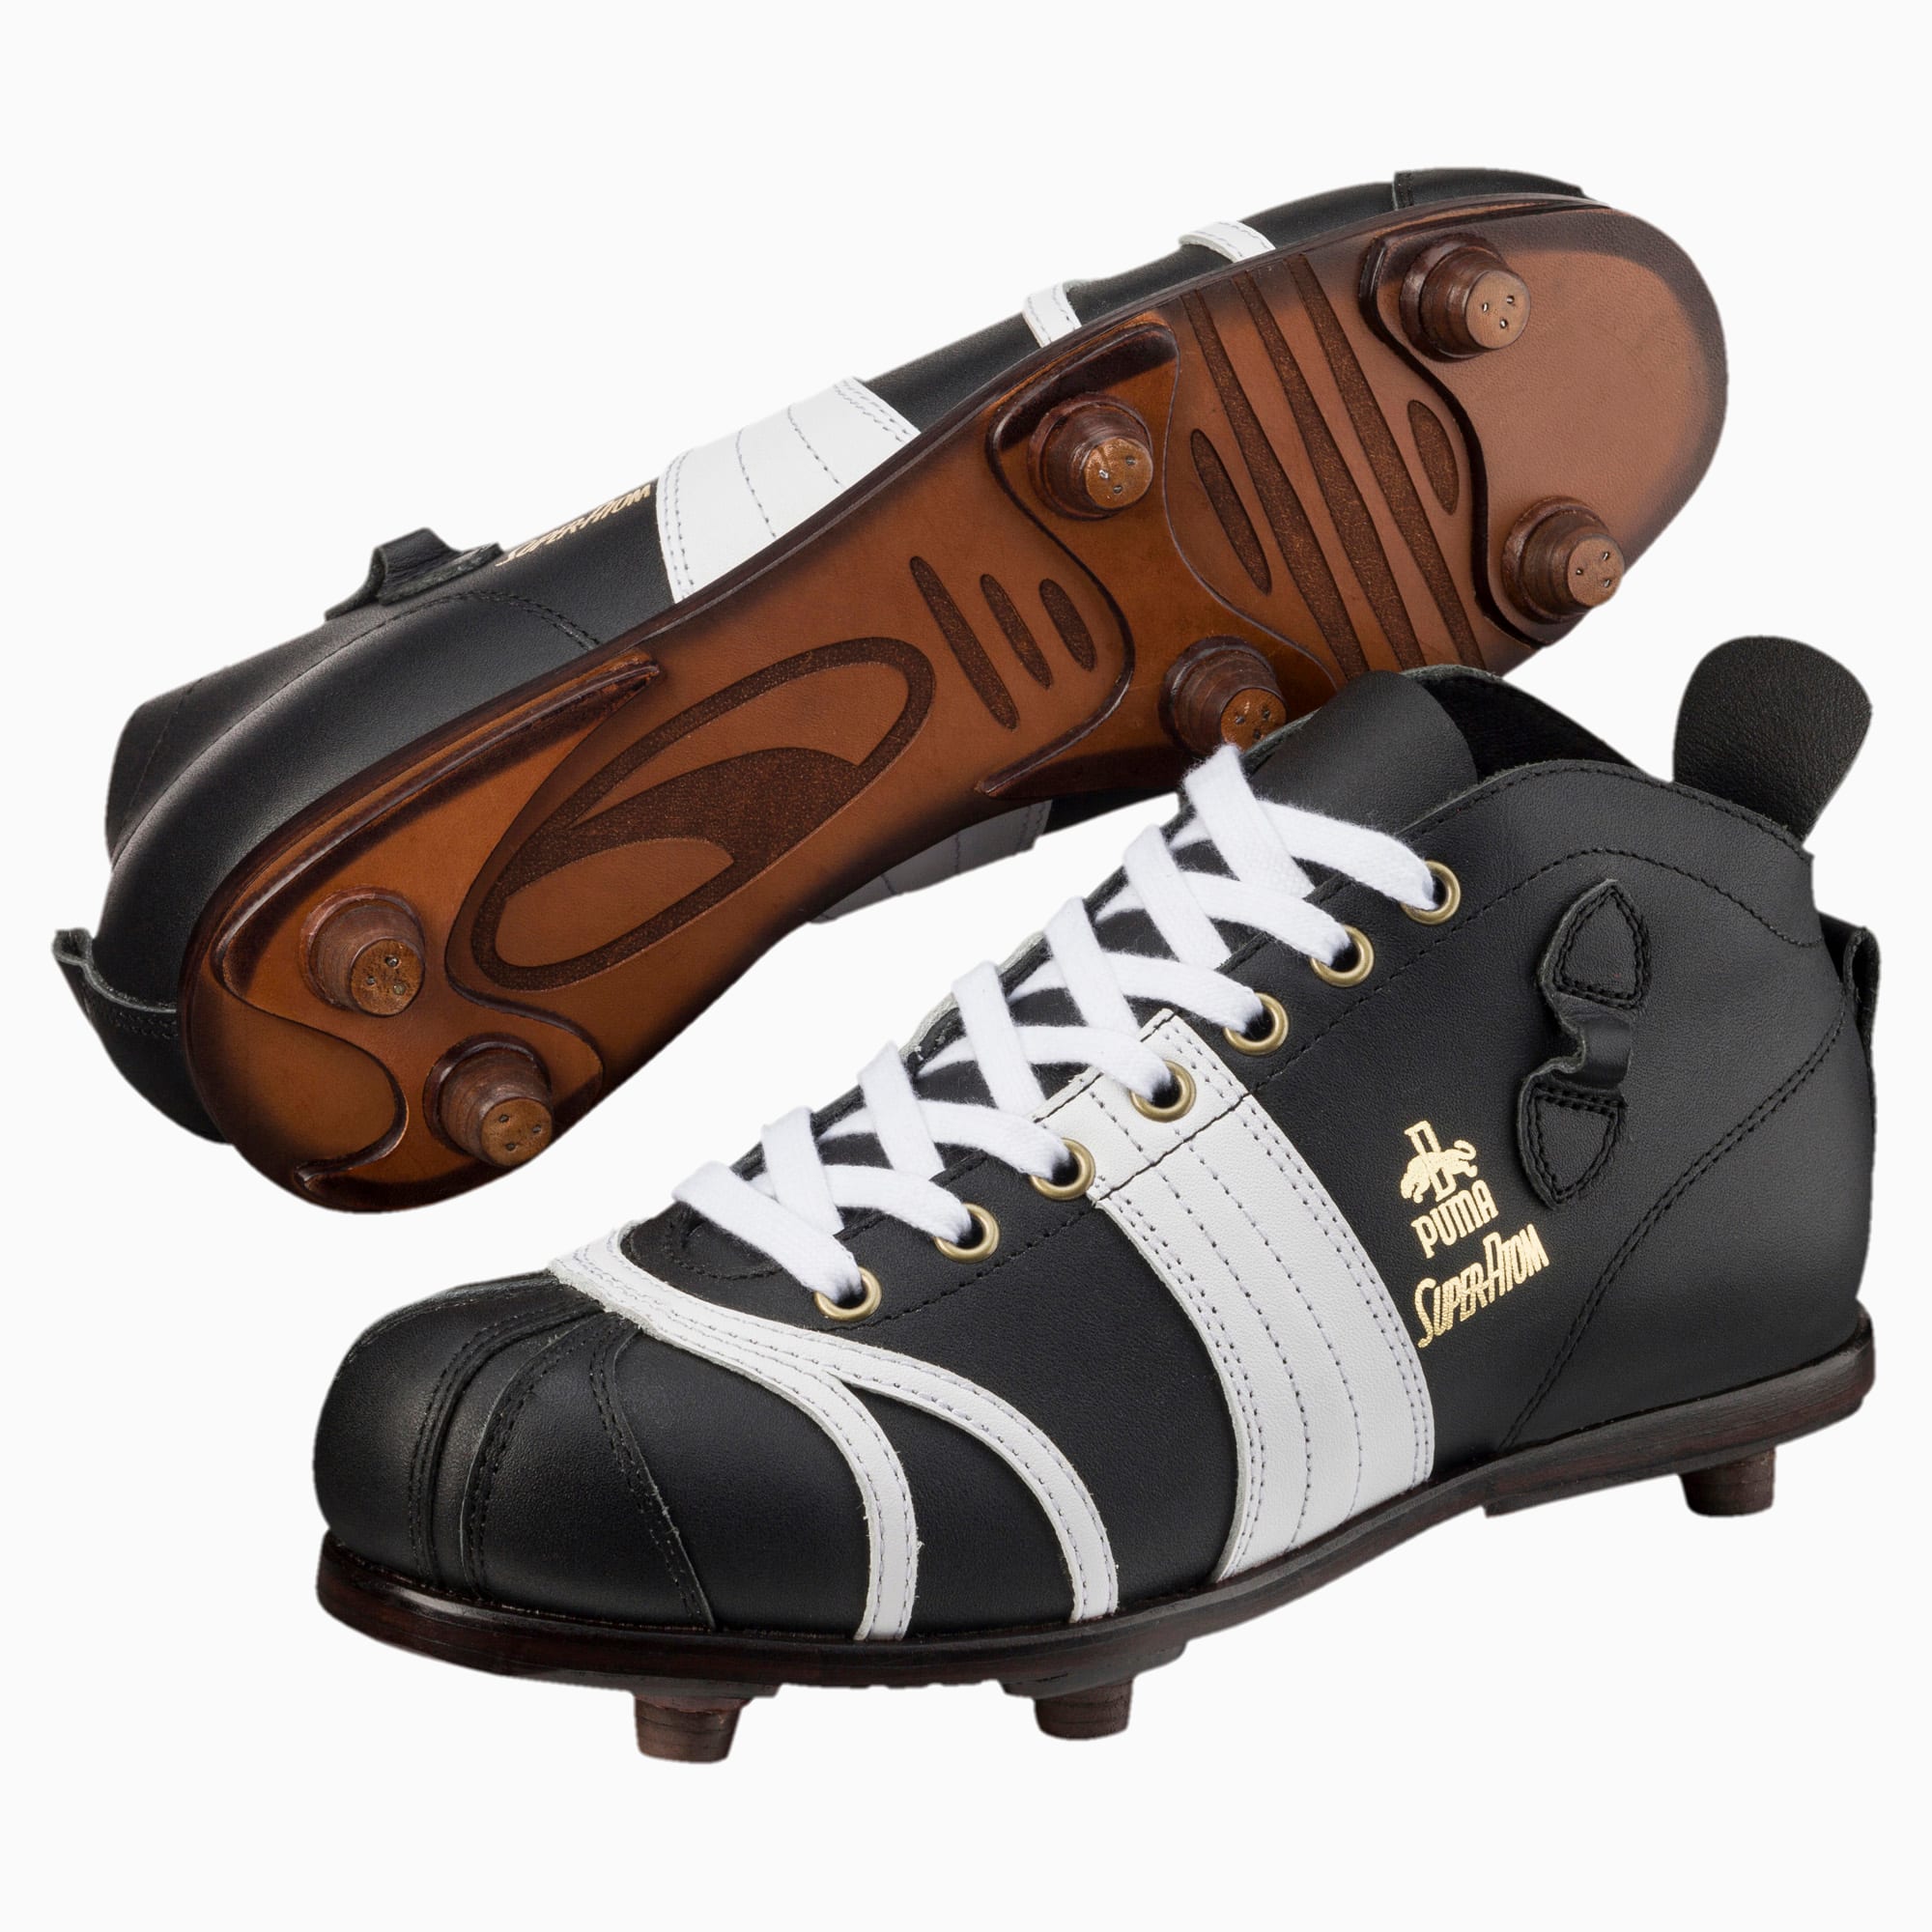 Super Atom Men's Football Boots | PUMA Shoes | PUMA Italia